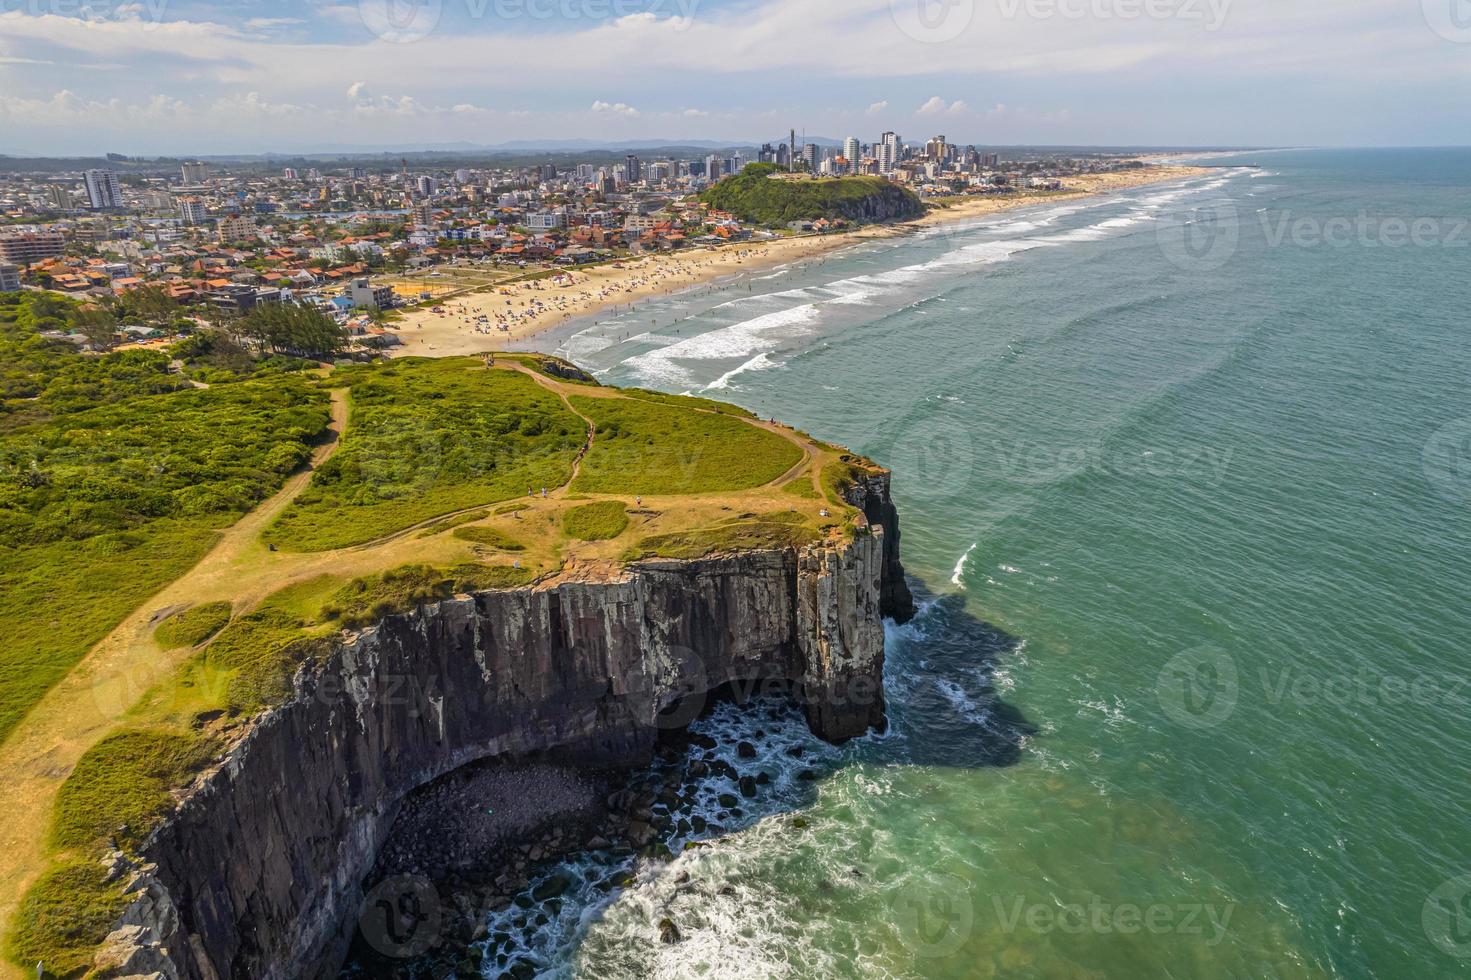 Luftbild von Torres, Rio Grande do Sul, Brasilien. Küstenstadt im Süden von Brasilien. foto